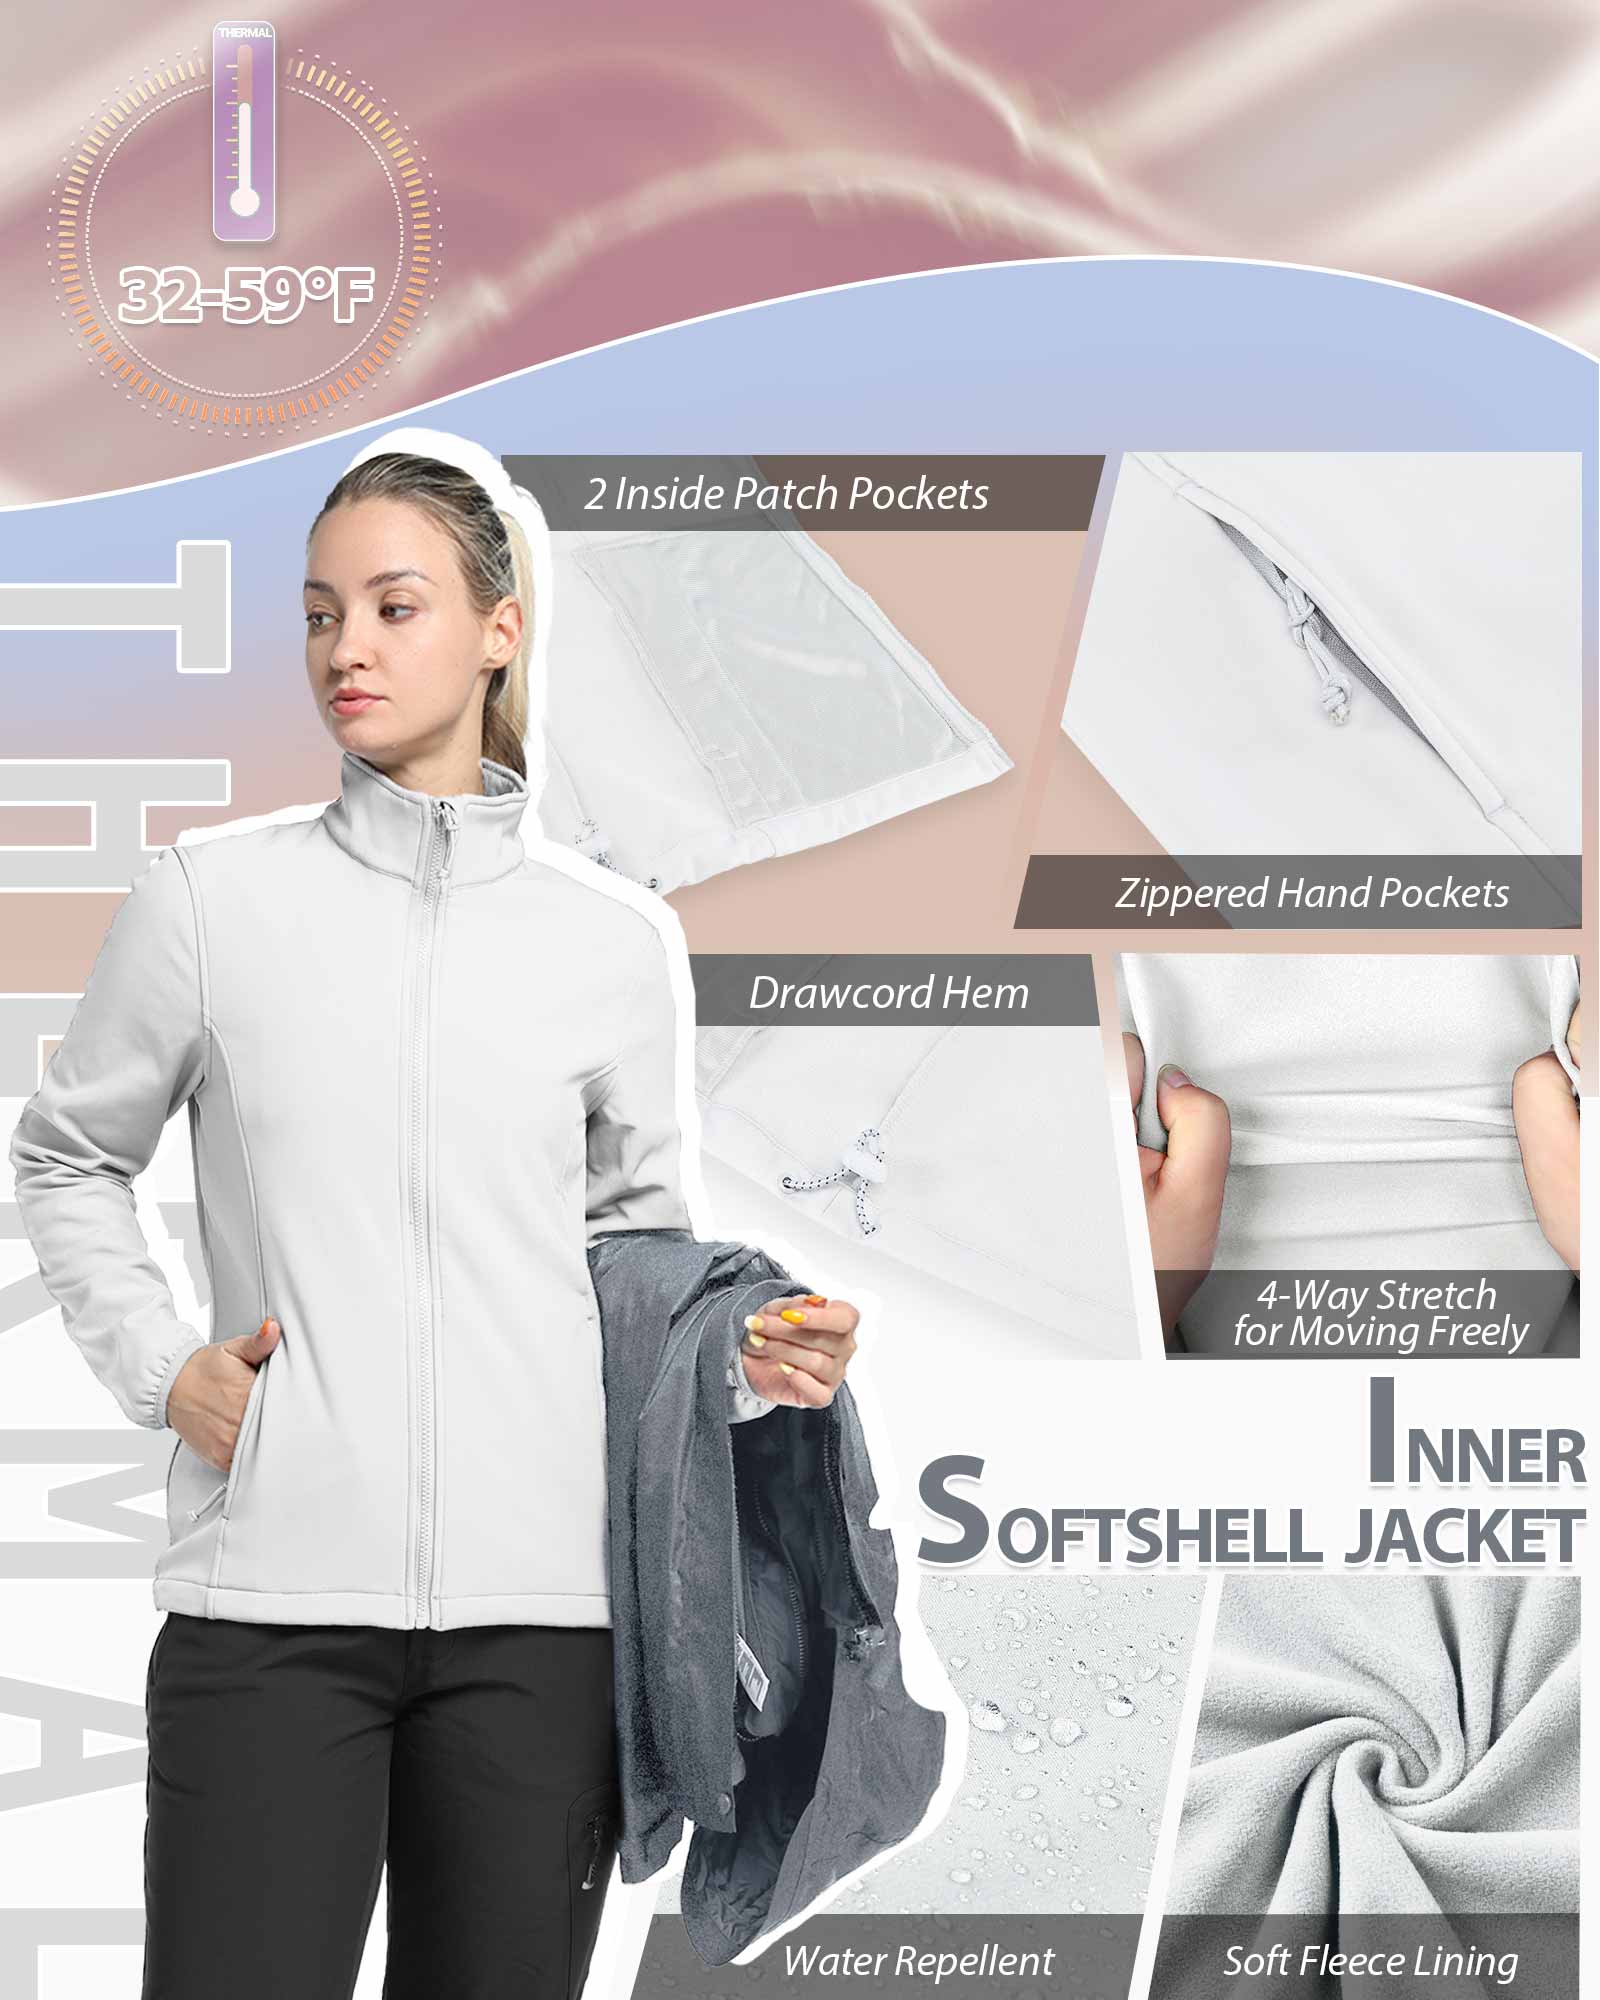 Women's Thermal Fleece Vest with zip - Trekking and Outdoor